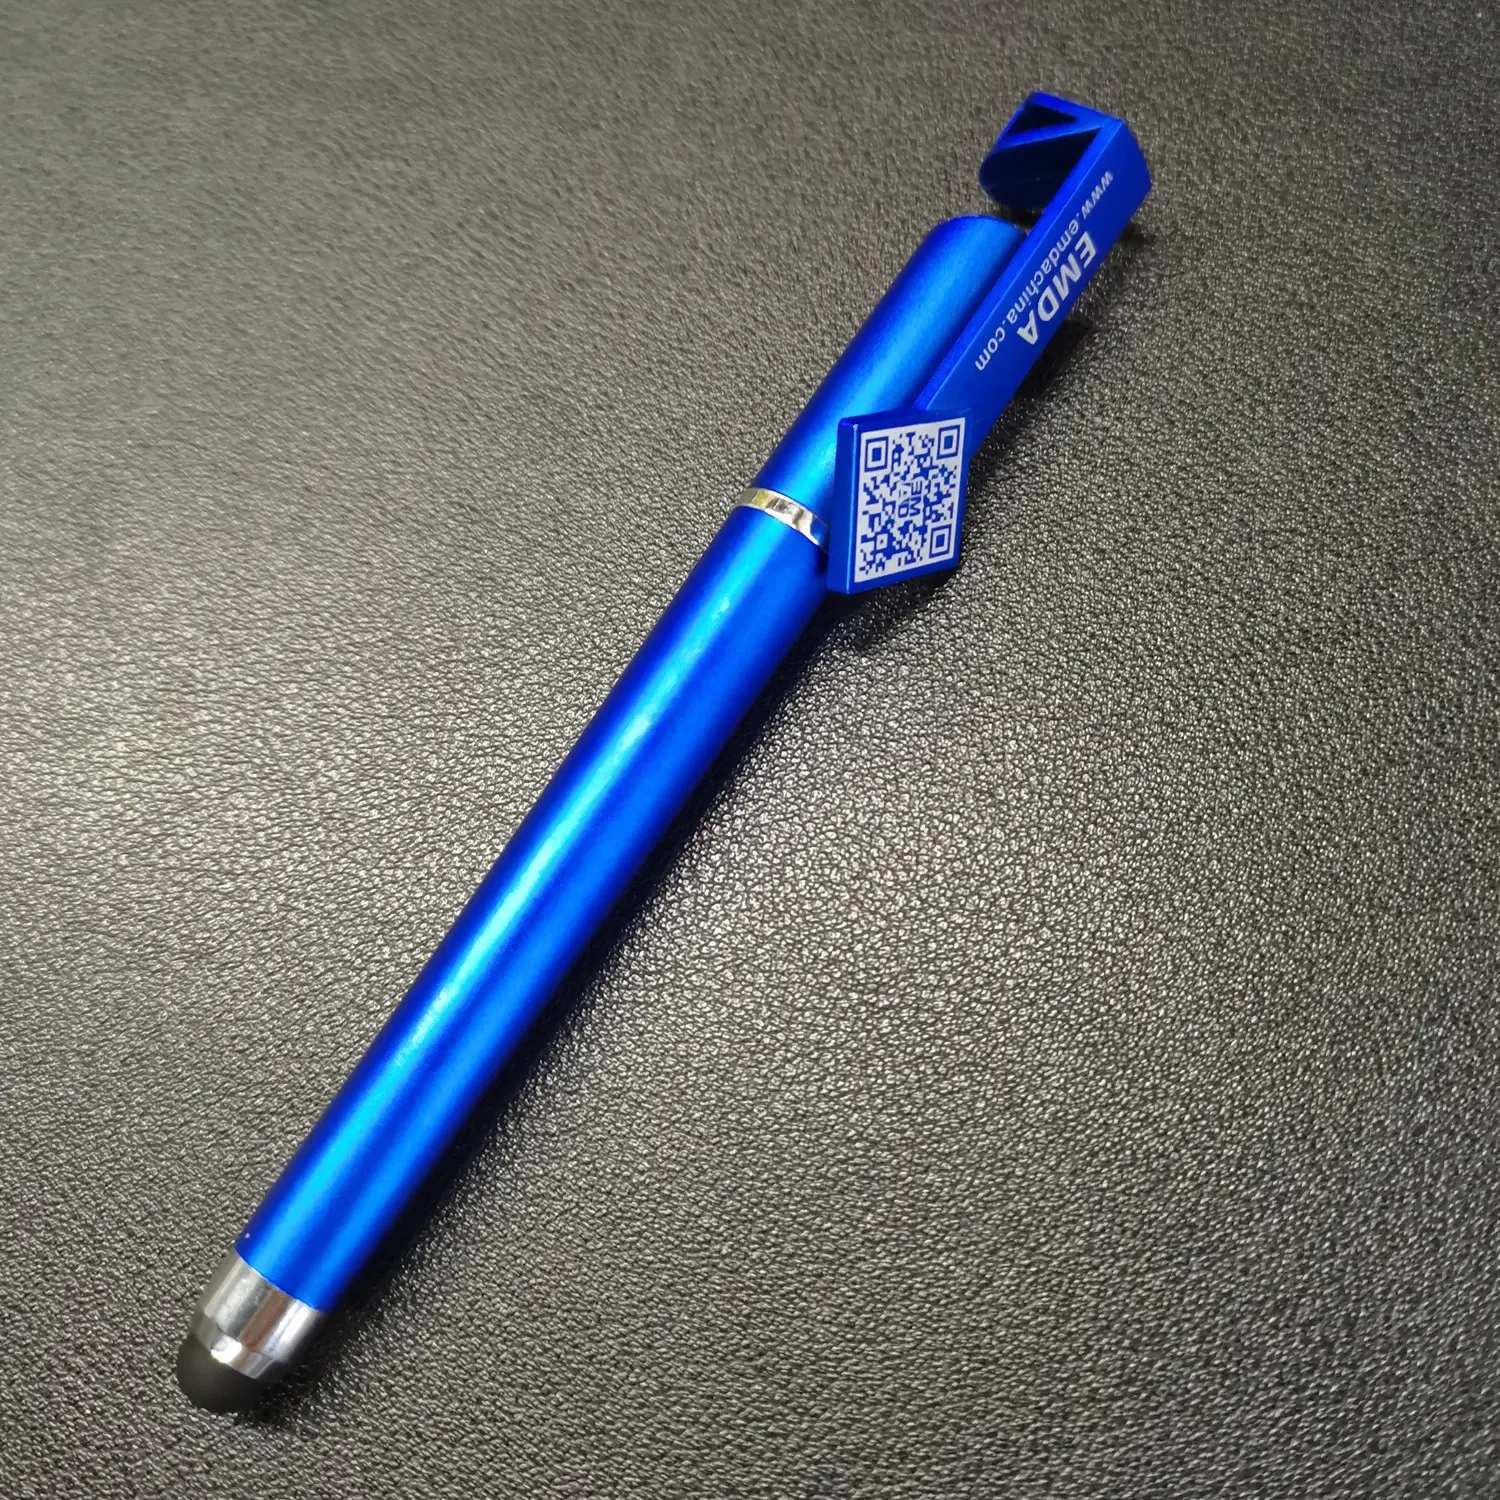 قلم ستايلوس ذو شاشة لمس ناعم يُباع بالجملة وهو حامل للهاتف ويدعم قلم الجل المكتبي والأزرق ويتمتع بقلم متعدد الوظائف 3 في 1 مع علامة تجارية مخصصة